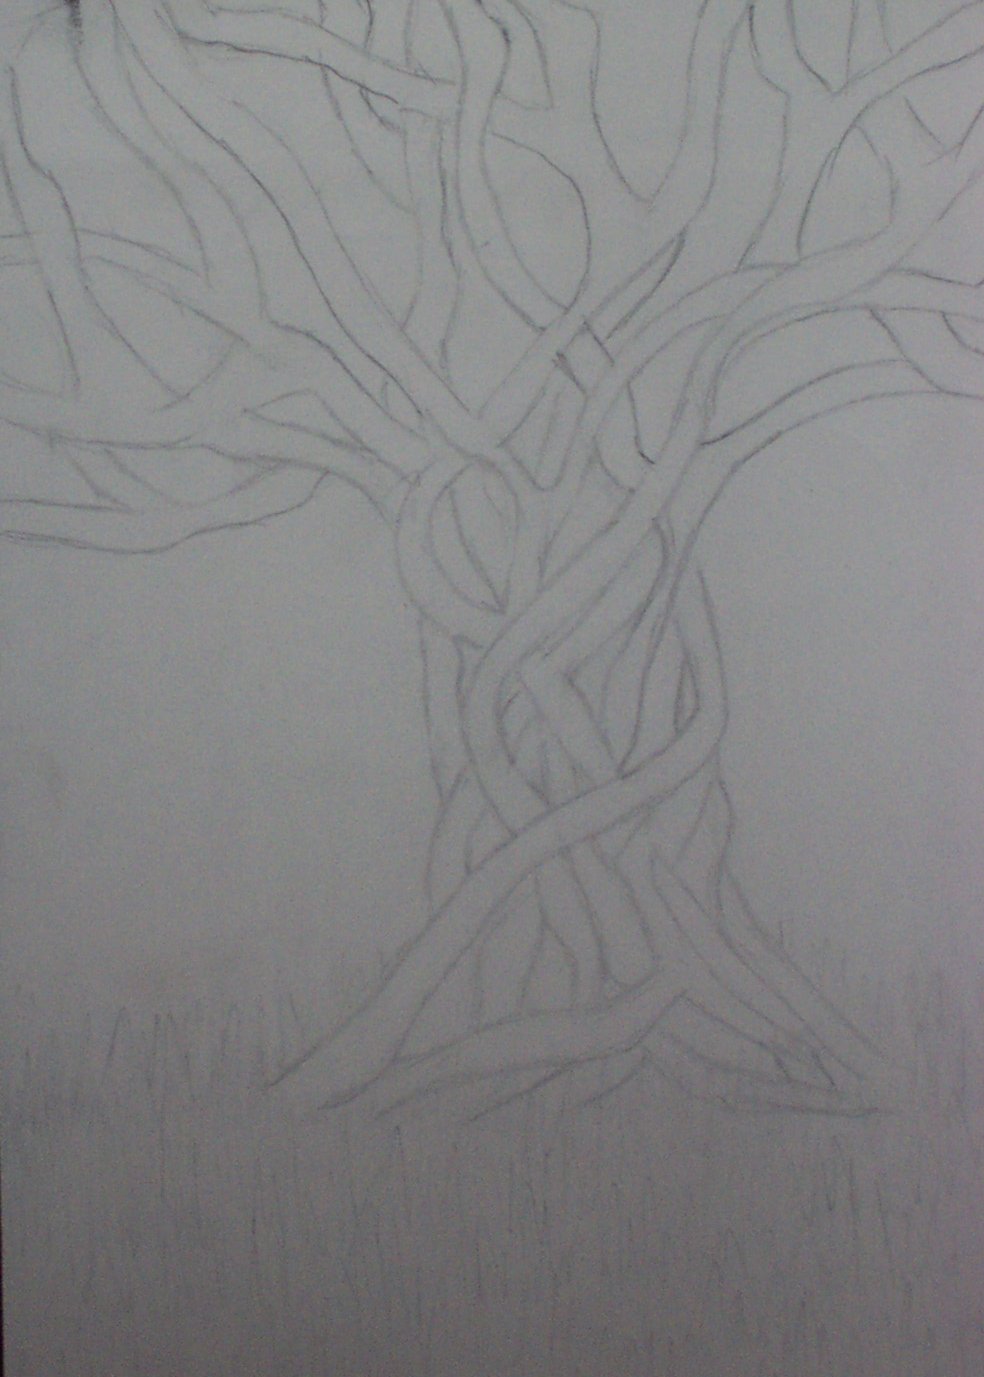 Mystic Tree by Jaz